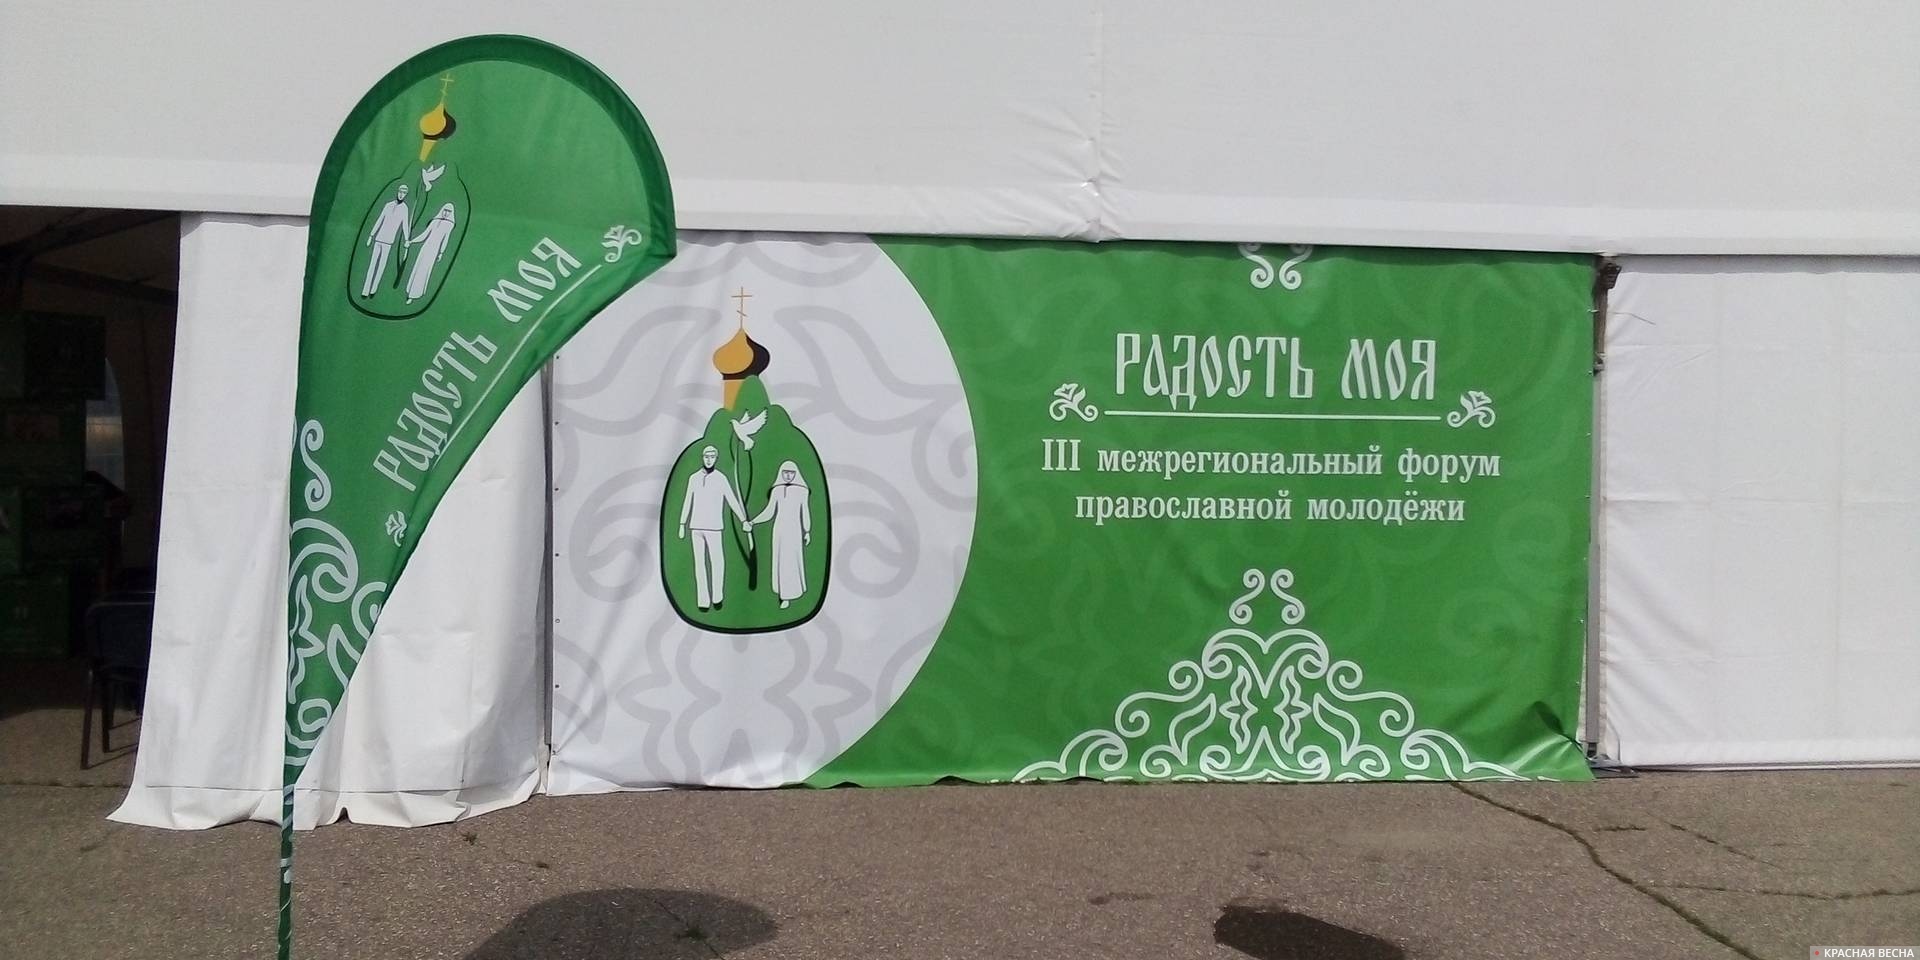 Палатки III межрегионального форума православной молодежи «Радость моя»